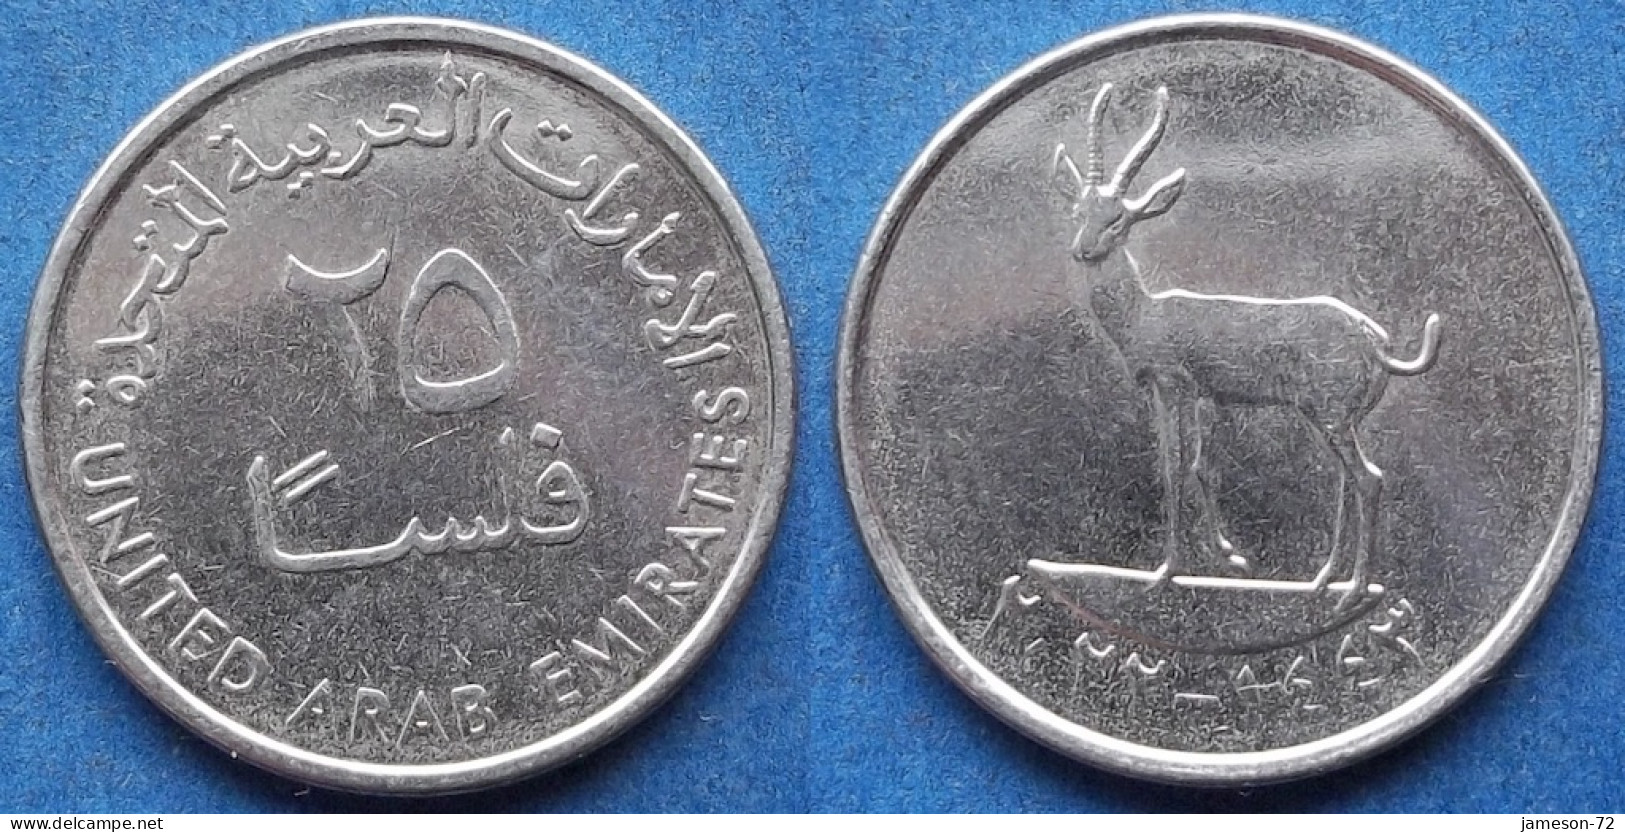 UNITED ARAB EMIRATES - 25 Fils AH1443 / 2022AD "Gazelle" KM# 4a Independent (1971) - Edelweiss Coins - United Arab Emirates